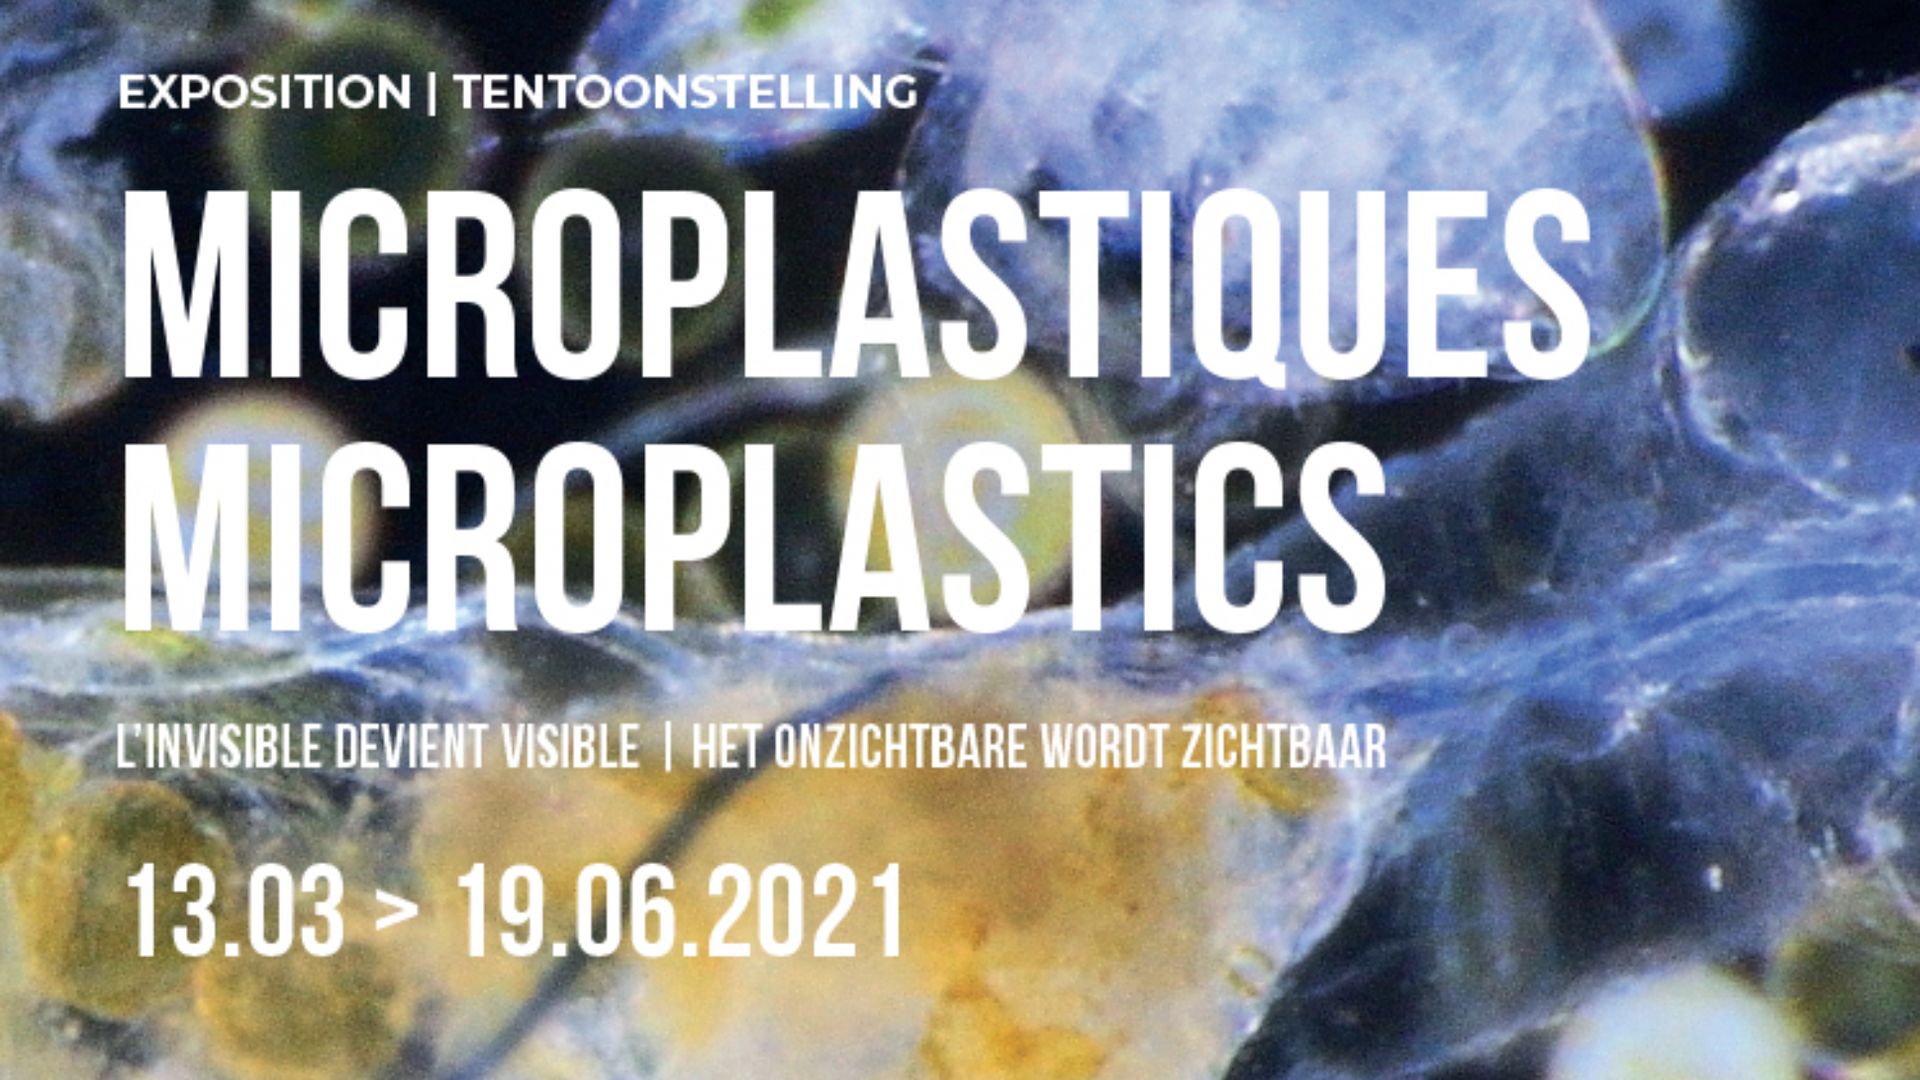 "Microplastiques" : une expo pour lutter contre la pollution des eaux, au Musée des égouts de Bruxelles